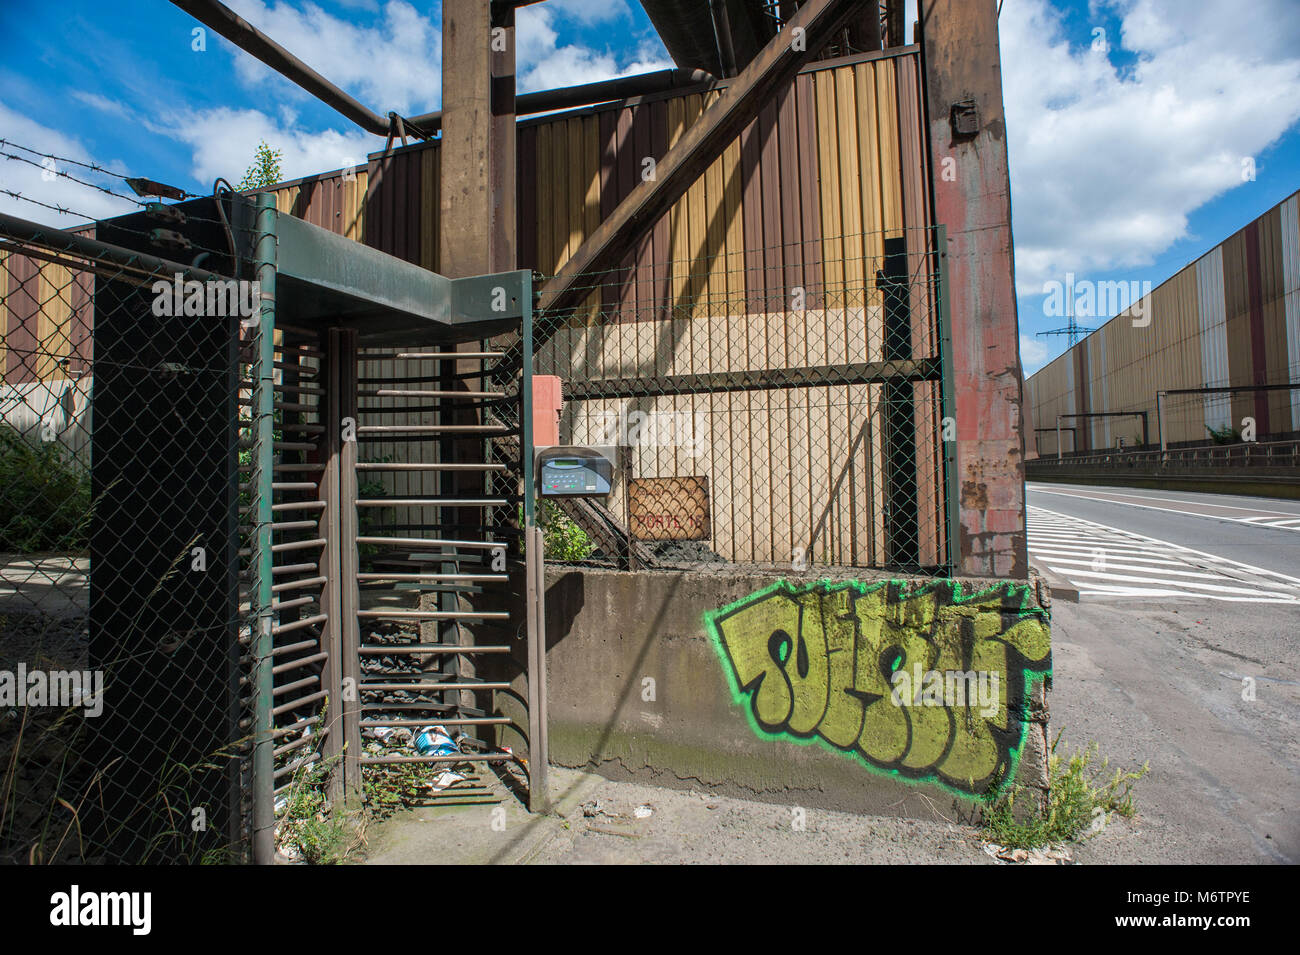 Charleroi, le fer et l'industrie de l'acier. La Belgique. Banque D'Images